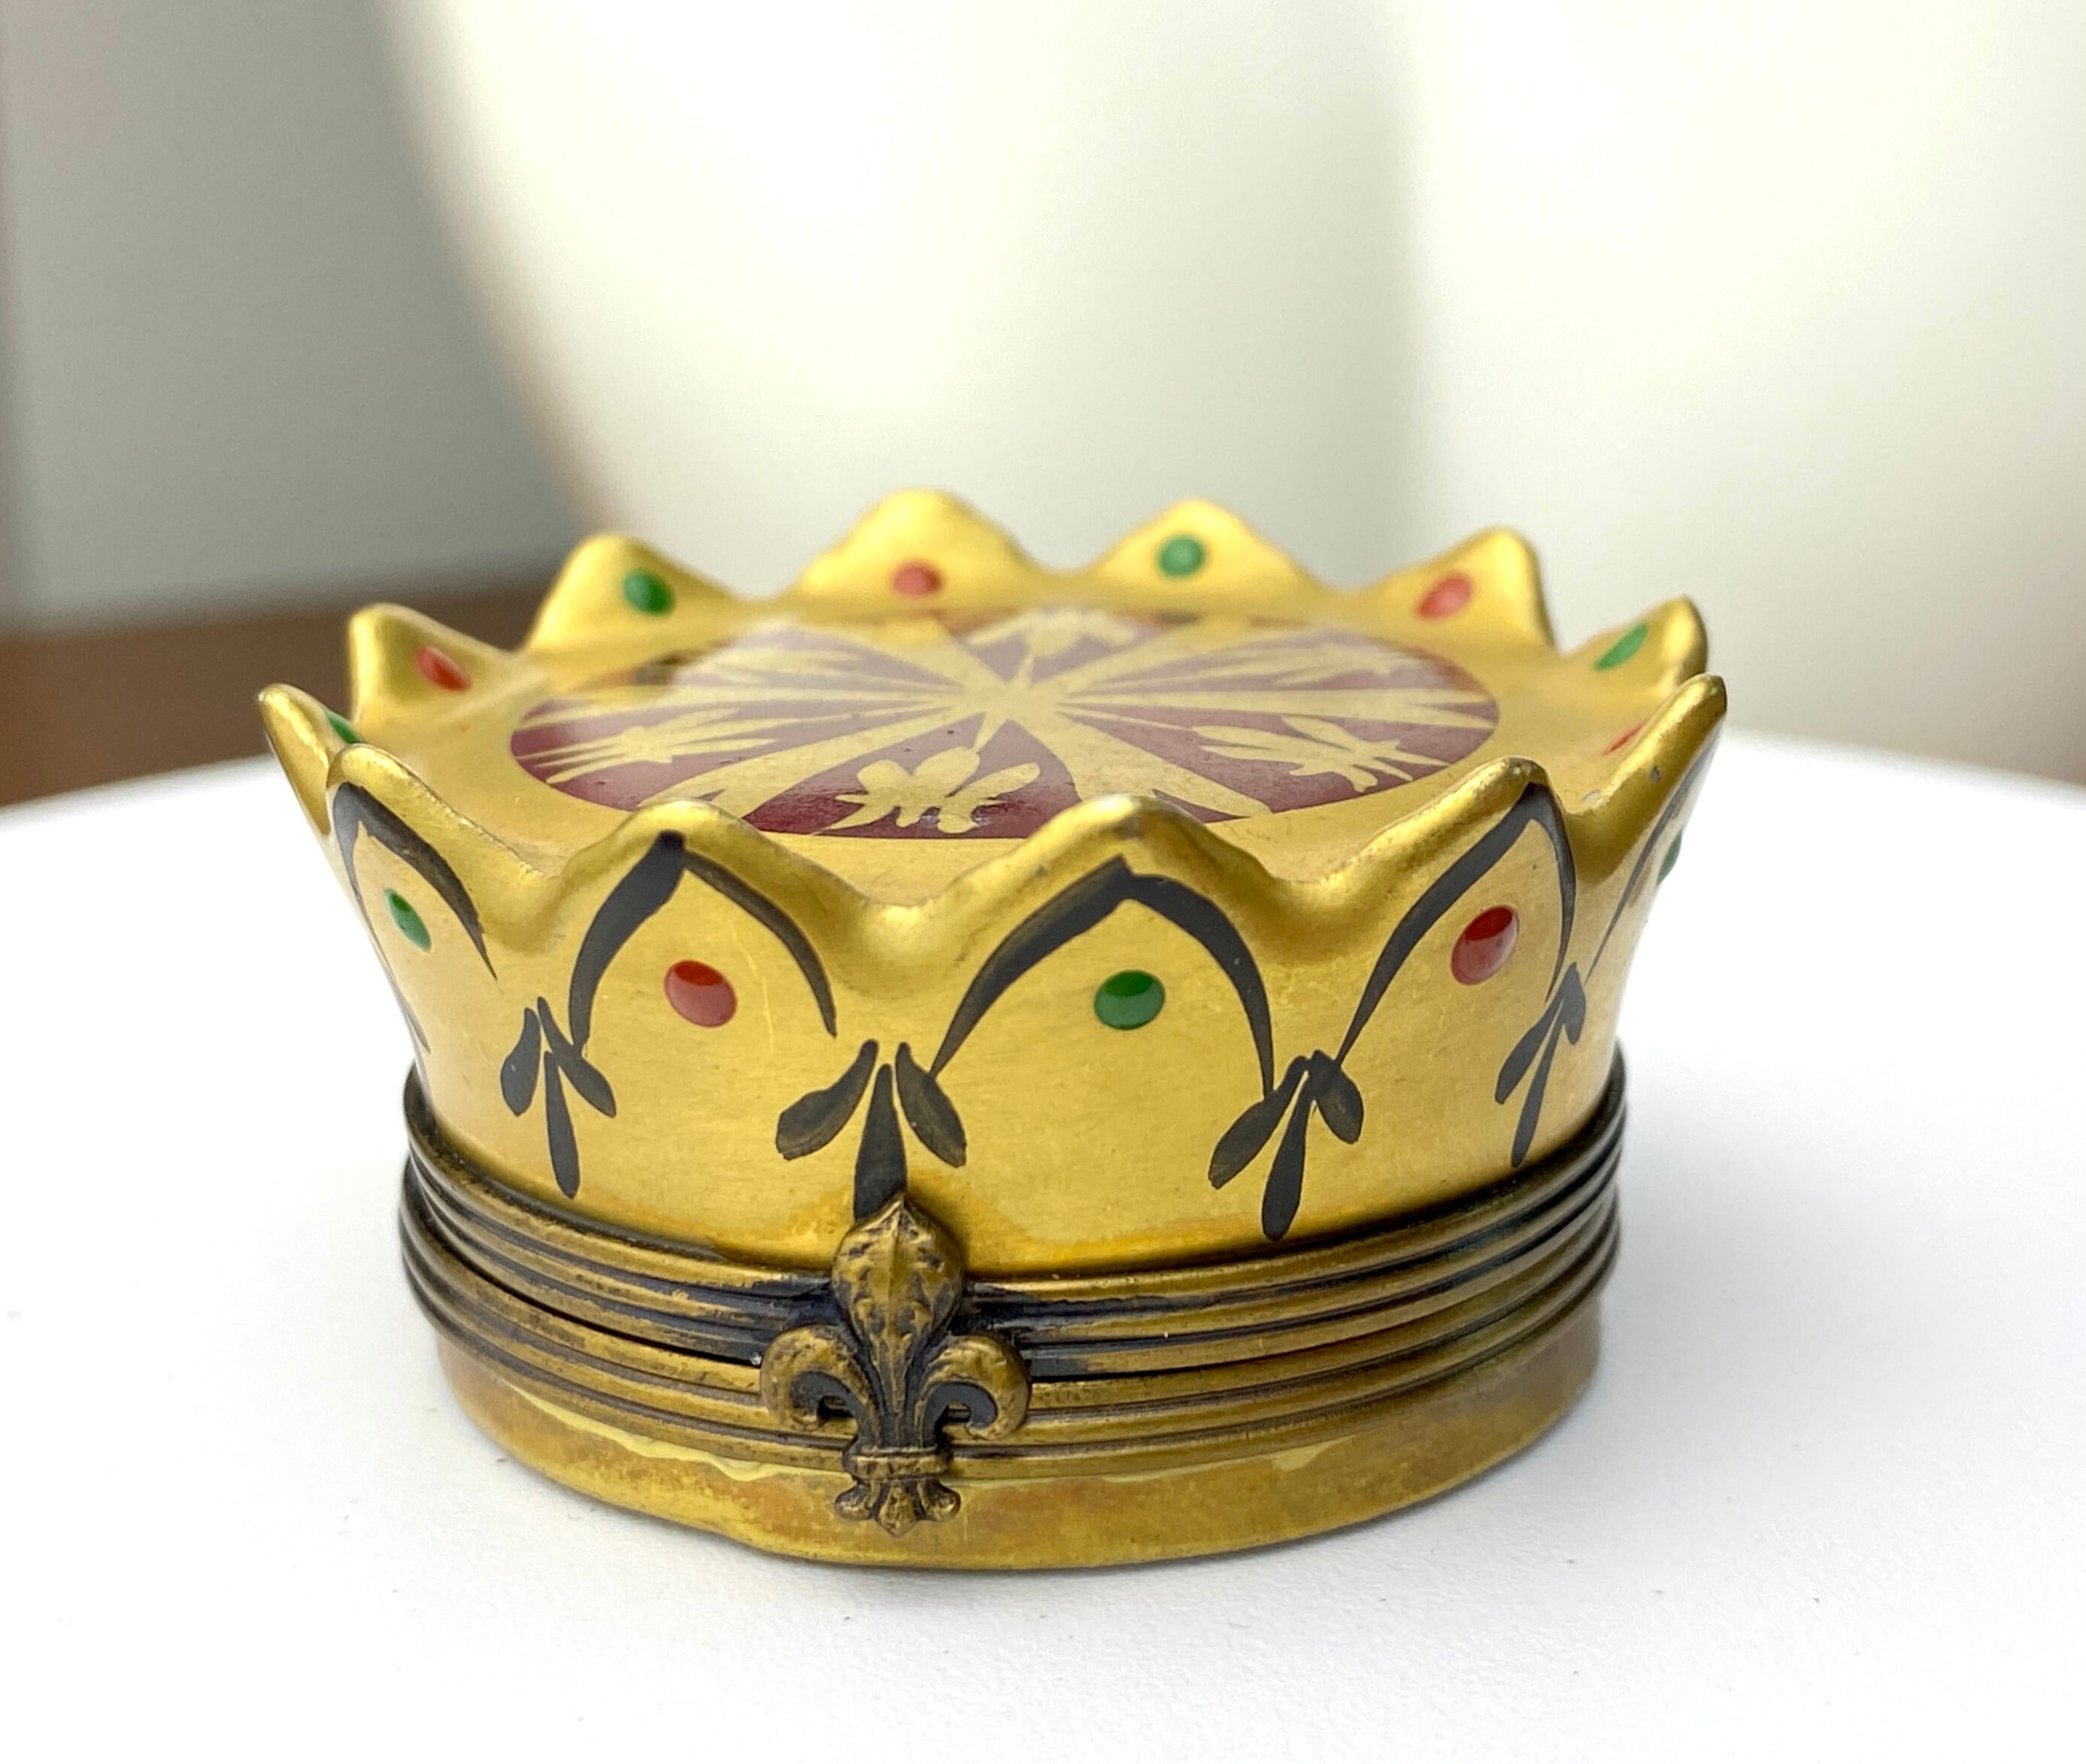 Galette des rois, feve, Crown, Hong Kong, Ceramic Trinket